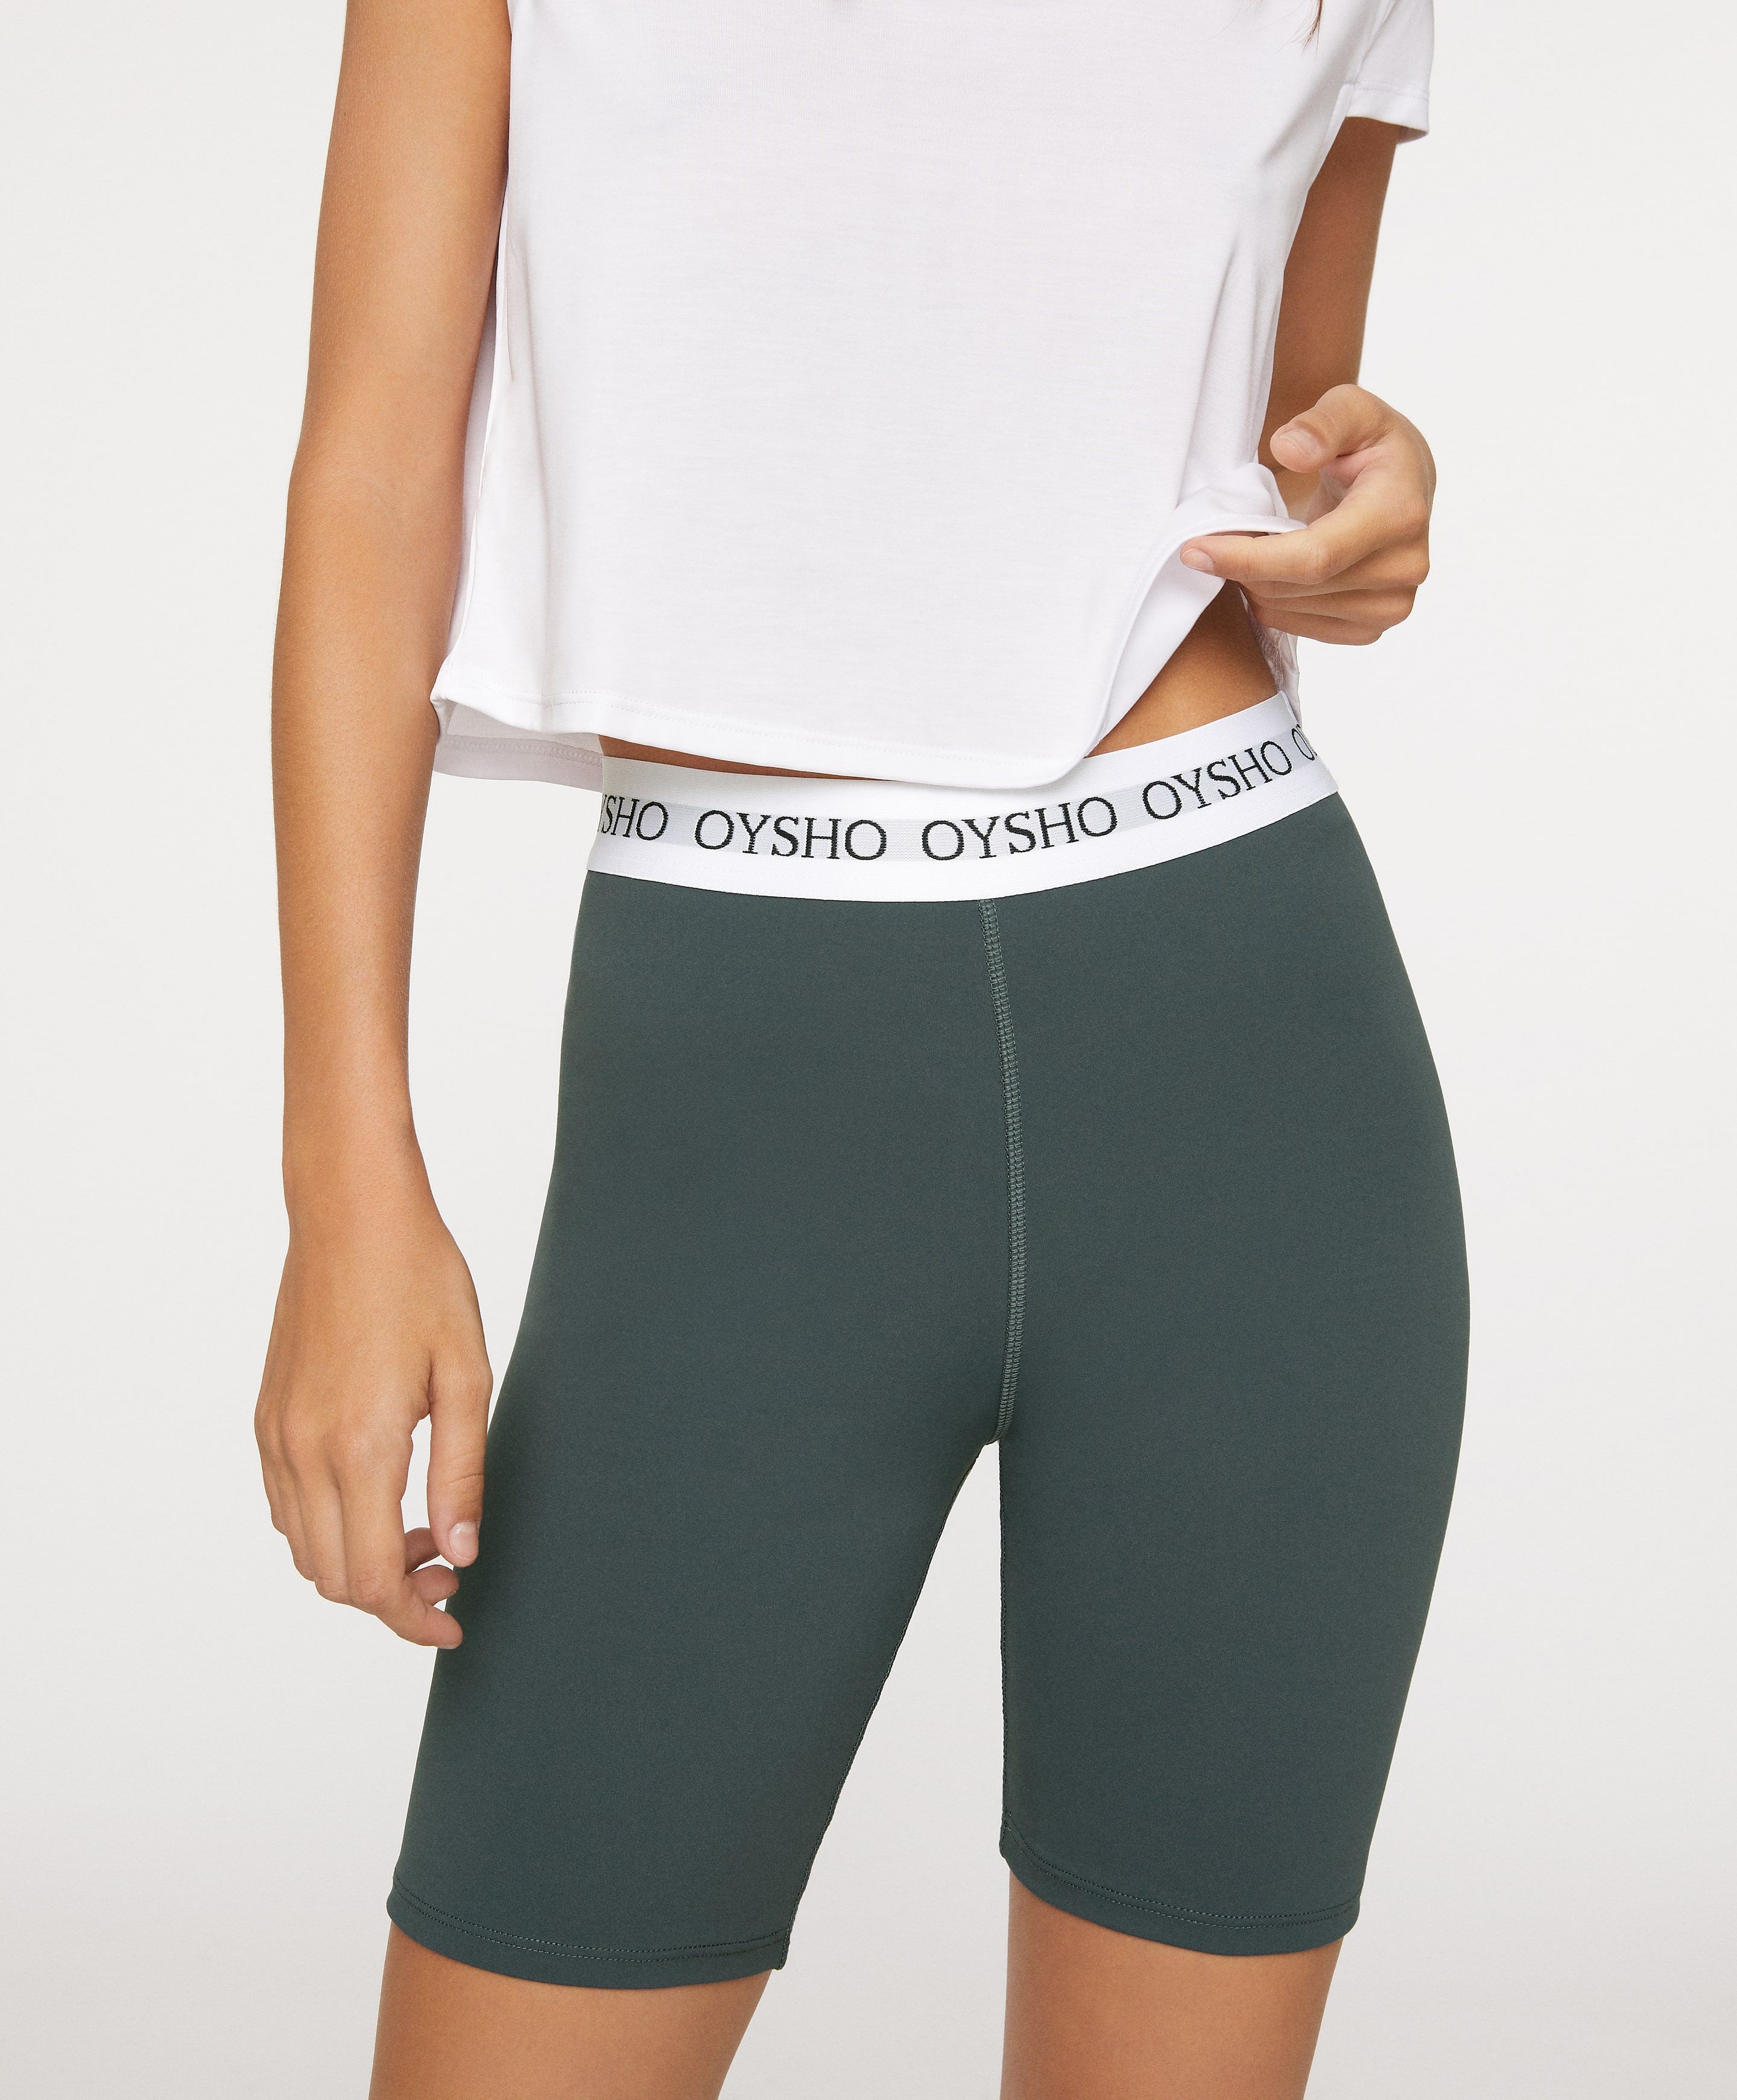 Pantalones Cortos Deportivos para Mujer Shorts de Playa de Verano Casuales Cintura Elástica Ajustable y Bolsillo para Fitness Running Yoga 